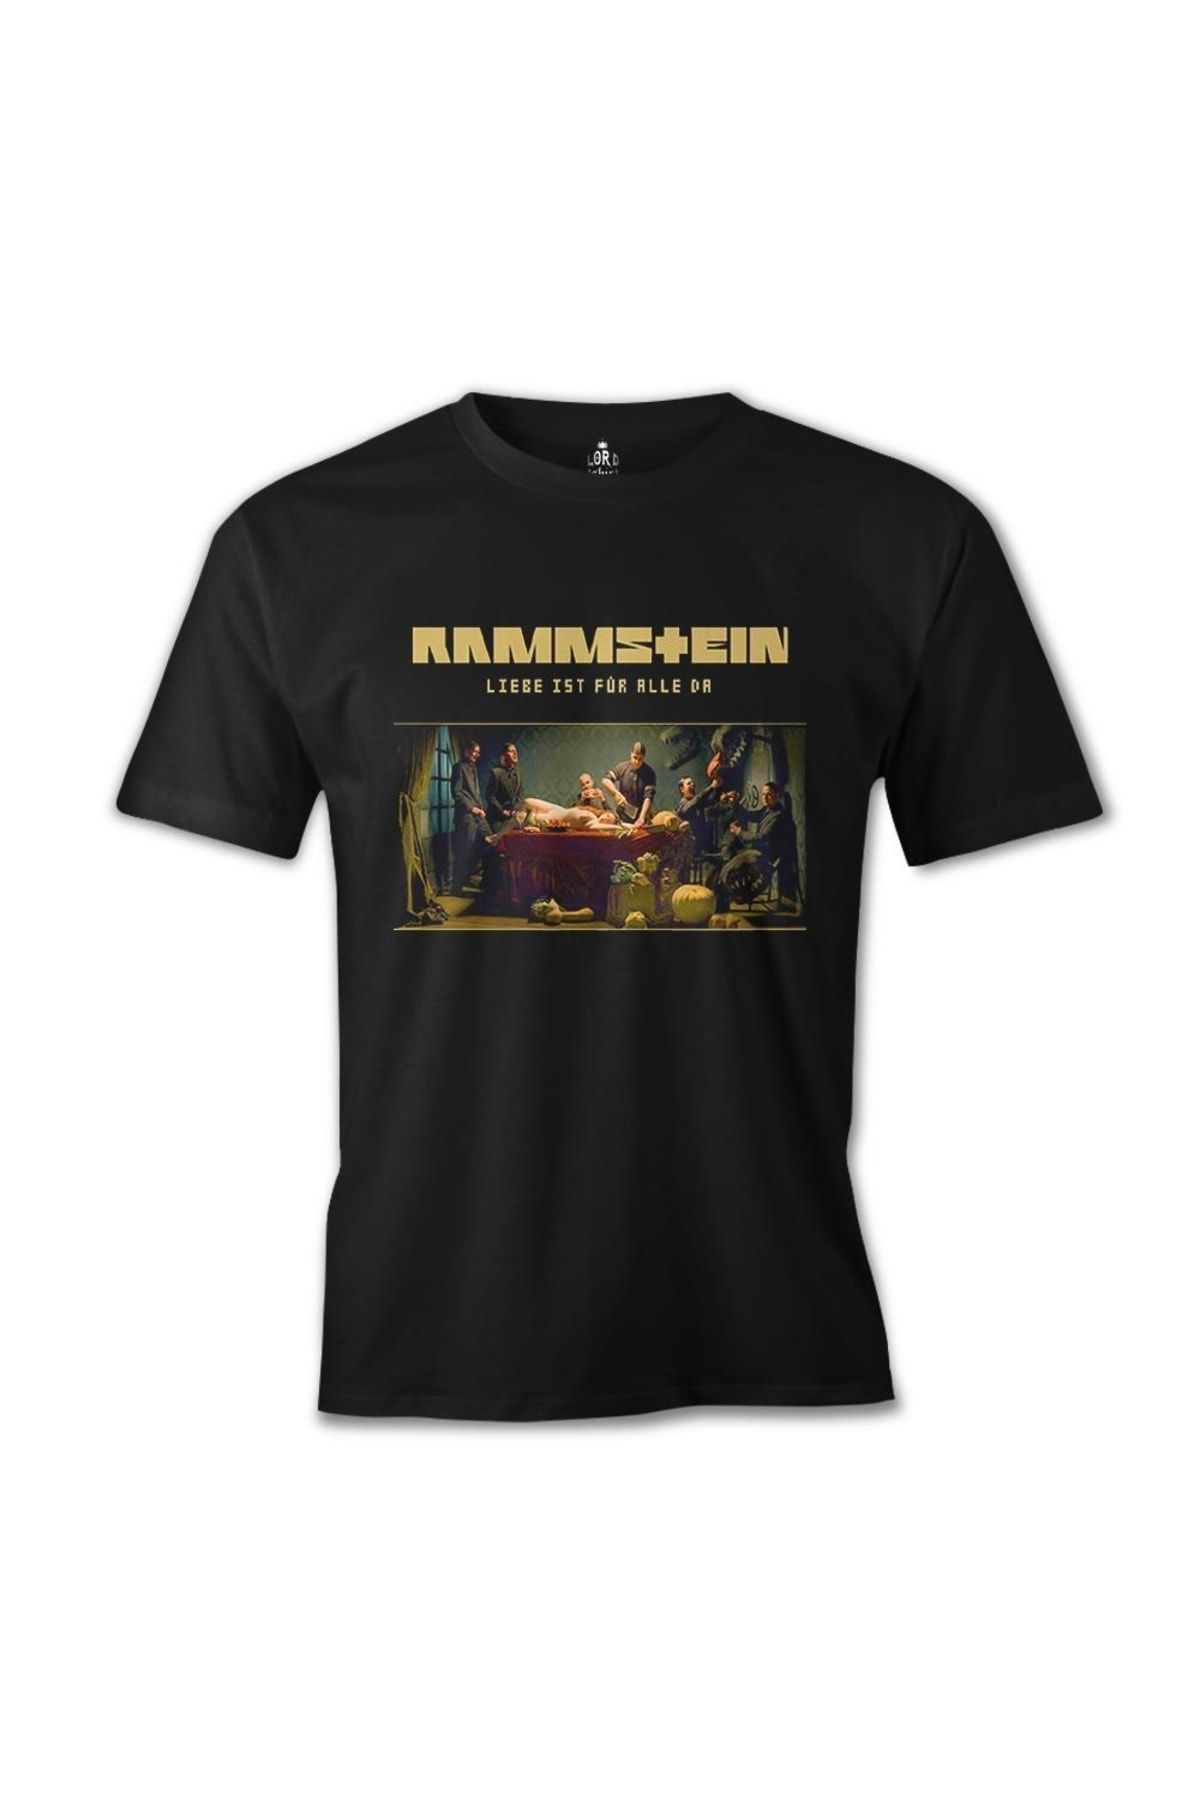 Lord T-Shirt Rammstein - Liebe Ist Für Alle Da Siyah Erkek Tshirt - es-49